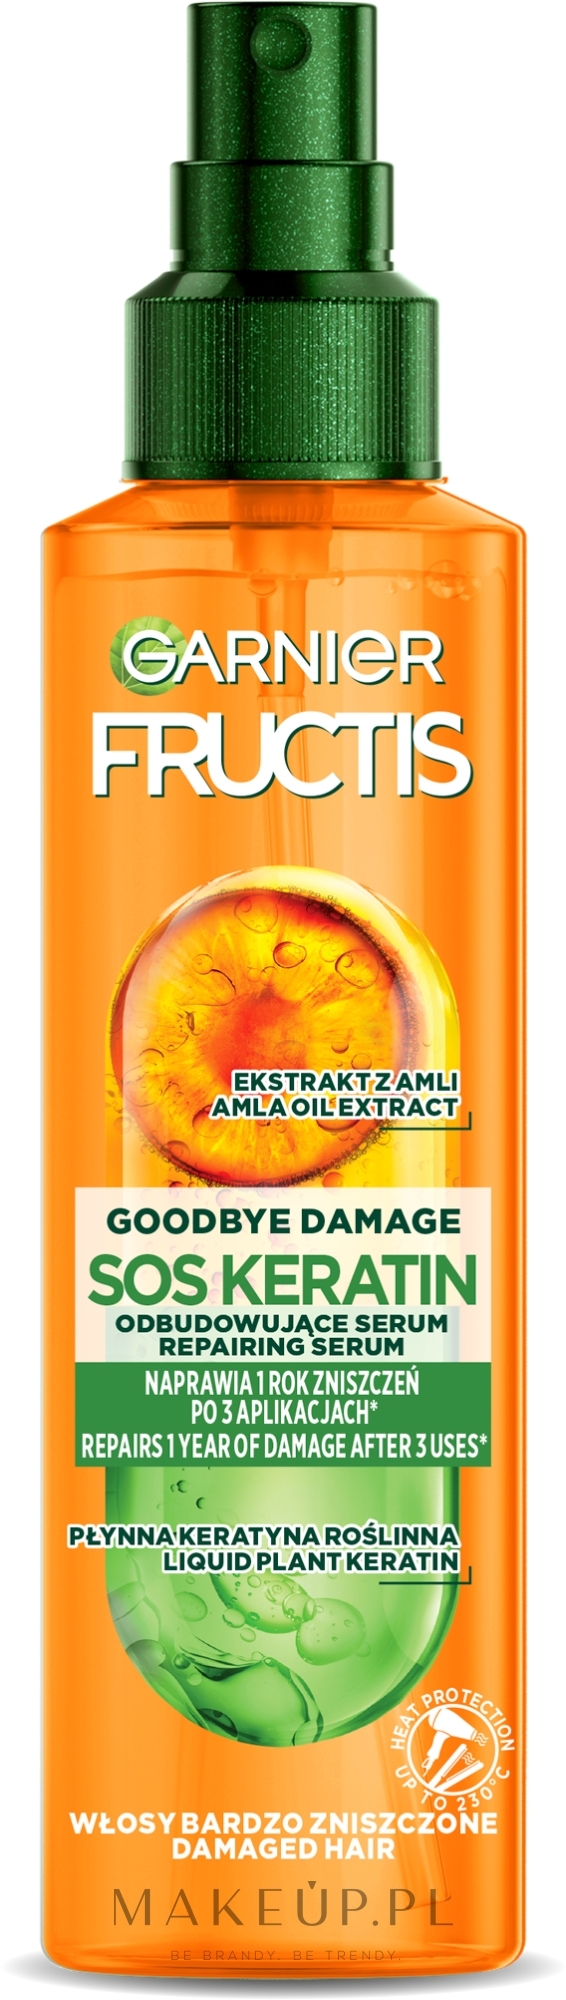 Serum do włosów w sprayu - Garnier Fructis Goodbye Damage SOS Keratin Repairing Serum — Zdjęcie 150 ml